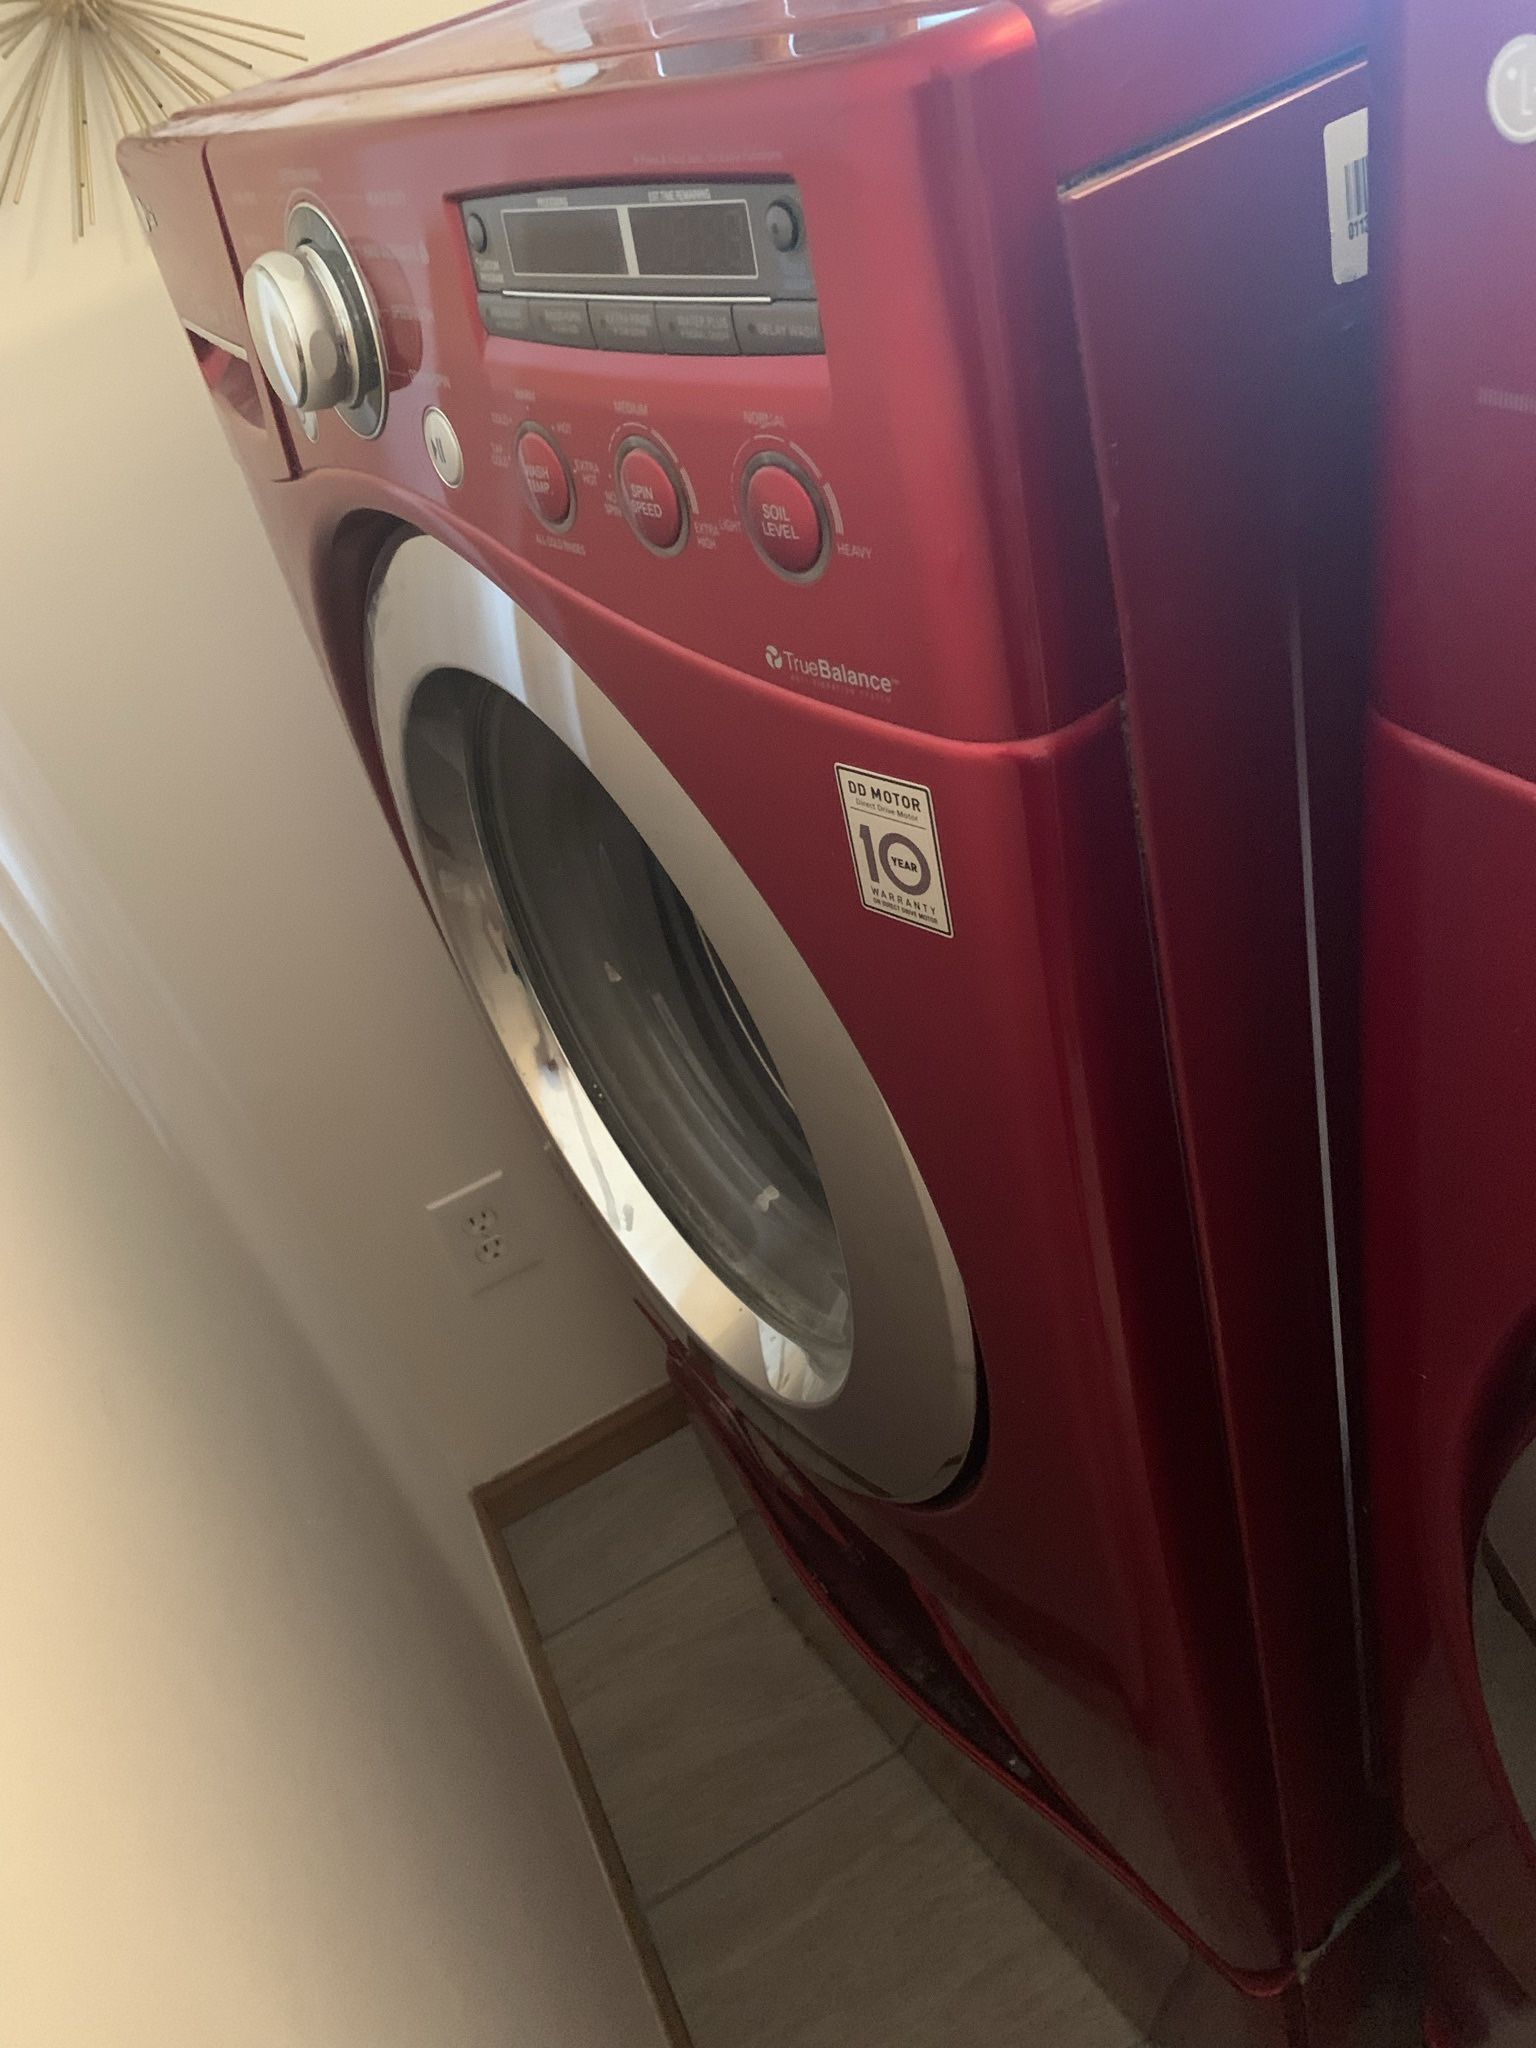 Free Washing Machine  - Needs Repair